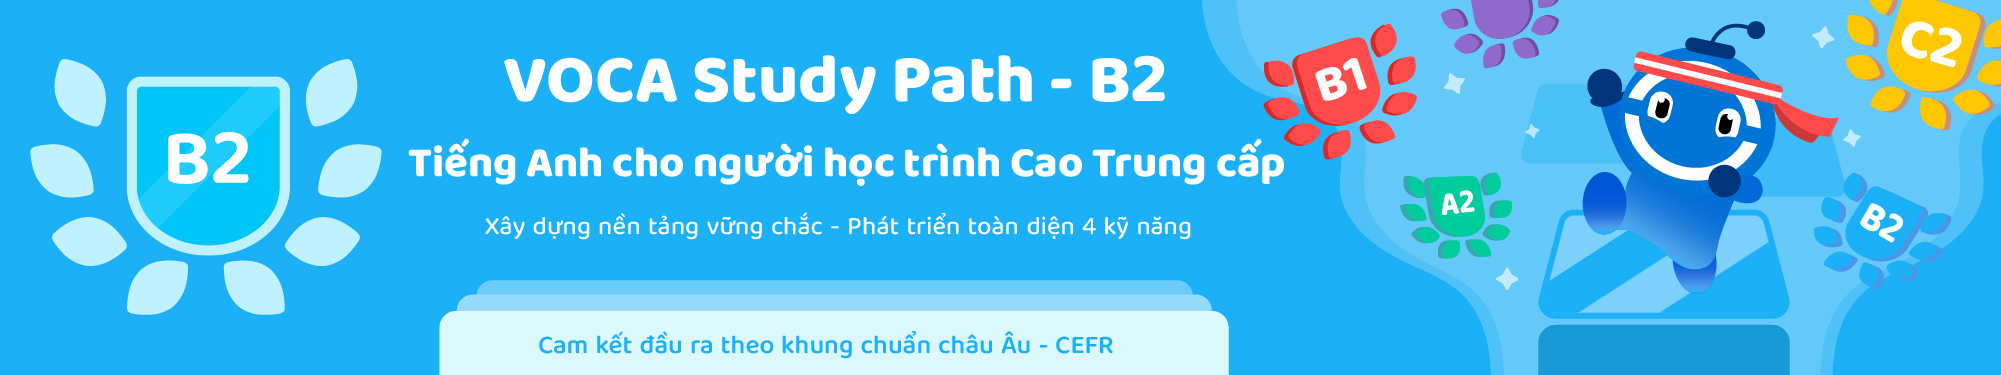 VOCA Study Path (CEFR) - Level B2 banner